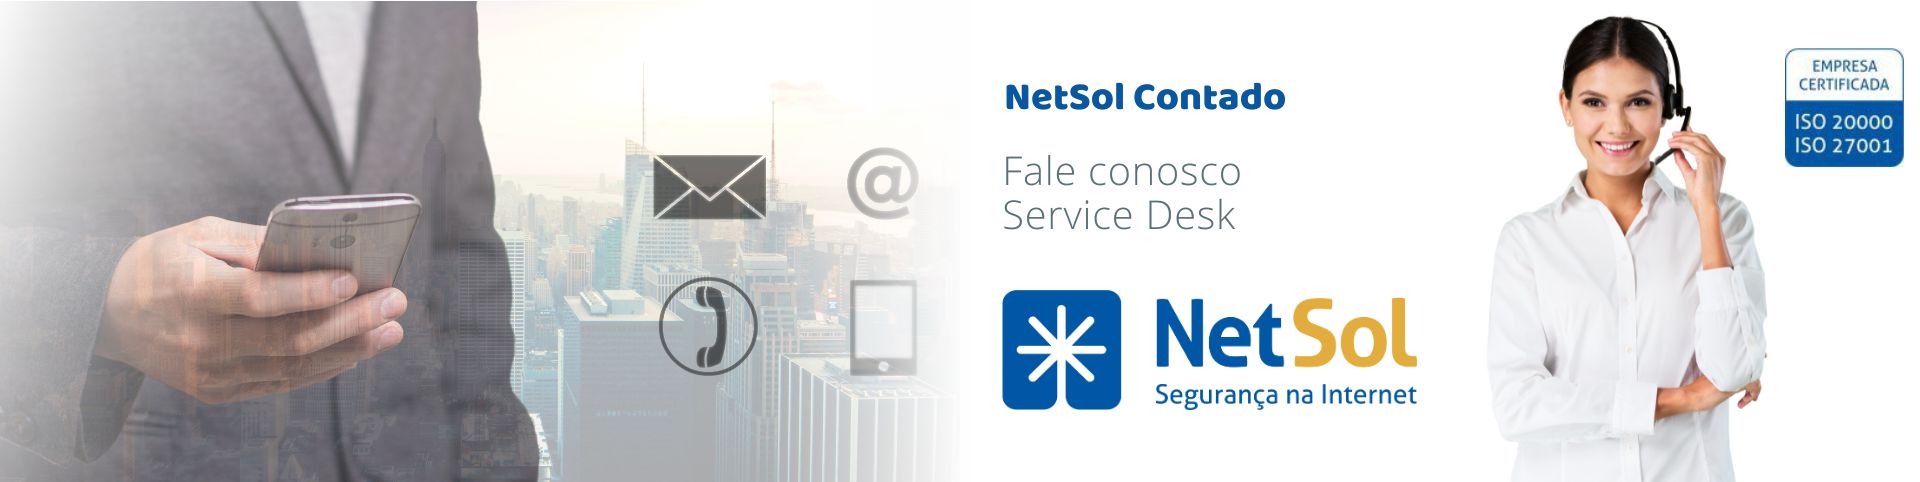 NetSol_Contato